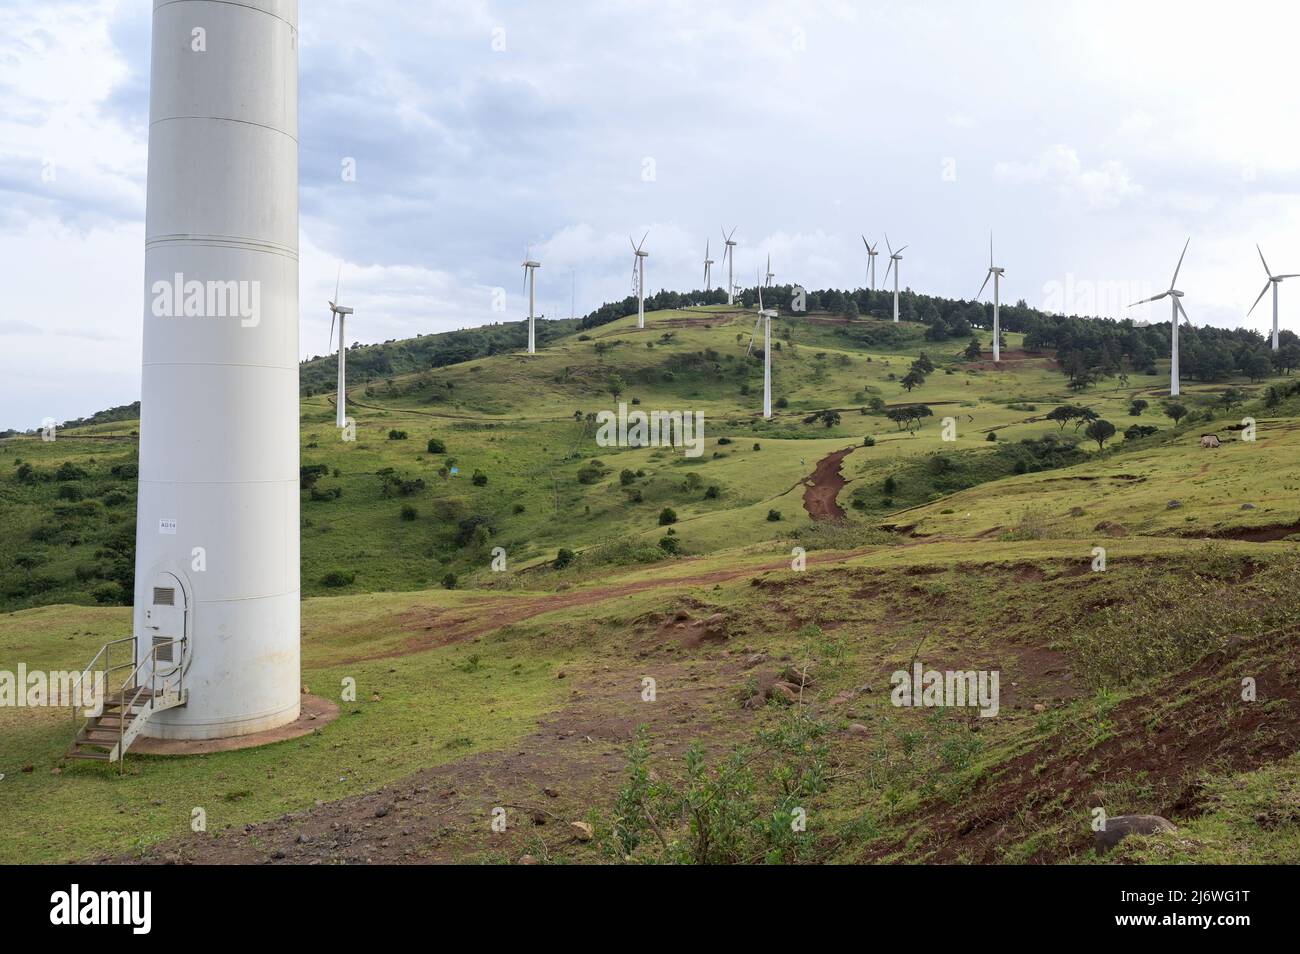 KENIA, Nairobi, Ngong Hills, 25,5 MW Windkraftwerk mit Gamesa Windkraftanlagen, Eigentum und Betrieb der KENGEN Kenya Electricity Generating Company, Gamesa ist Teil des Unternehmens Siemens Gamesa Renewable Energy/KENIA, Ngong Hills Windpark, Betreiber KenGen Kenya Electricity Generating Company mit Gamesa Windkraftanlagen Stockfoto